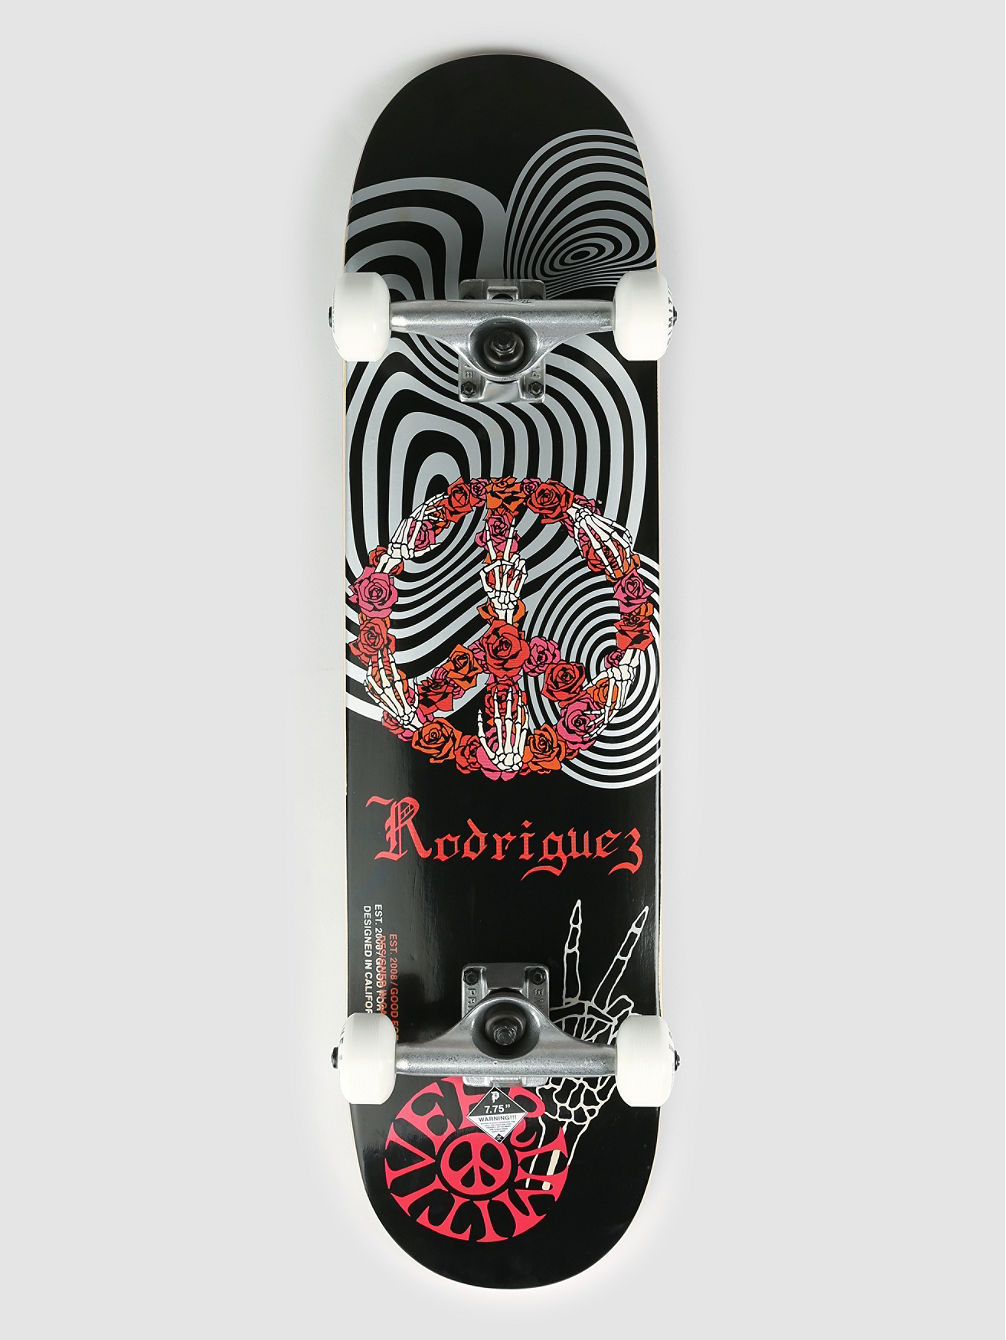 Rodriguez Gfl 7.75&amp;#034; Skateboard complet